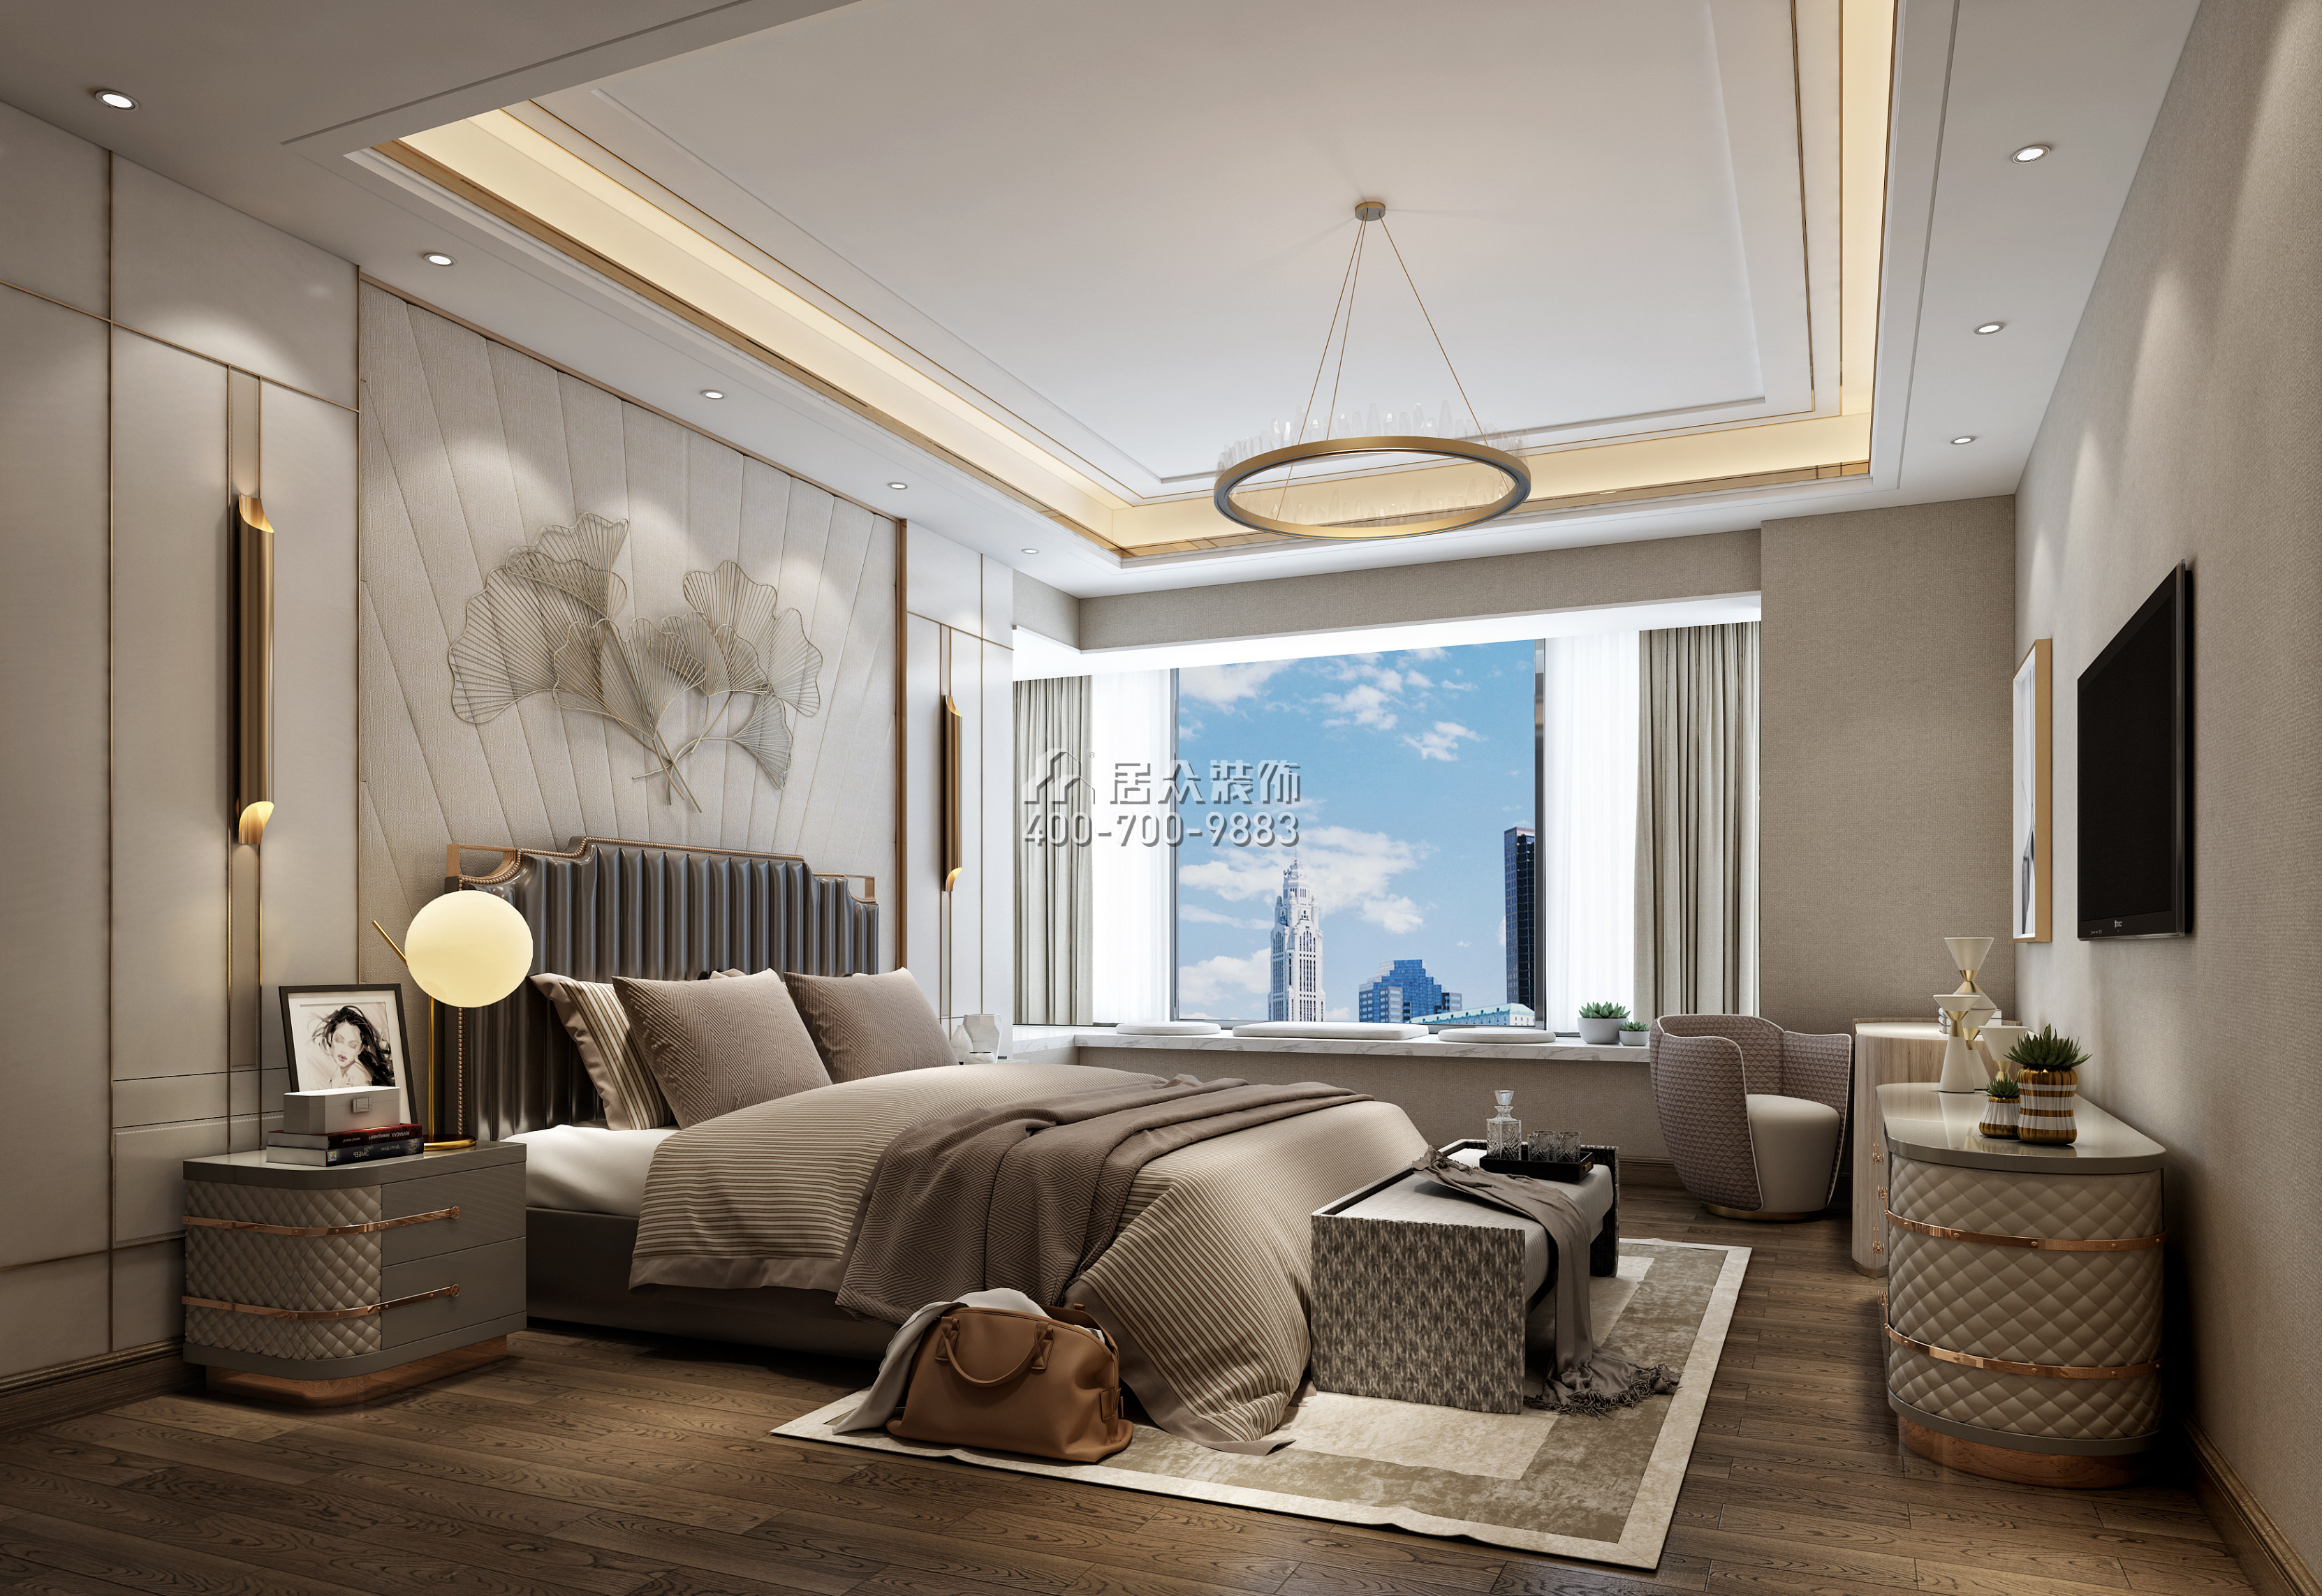 錦繡山河200平方米歐式風格平層戶型臥室裝修效果圖